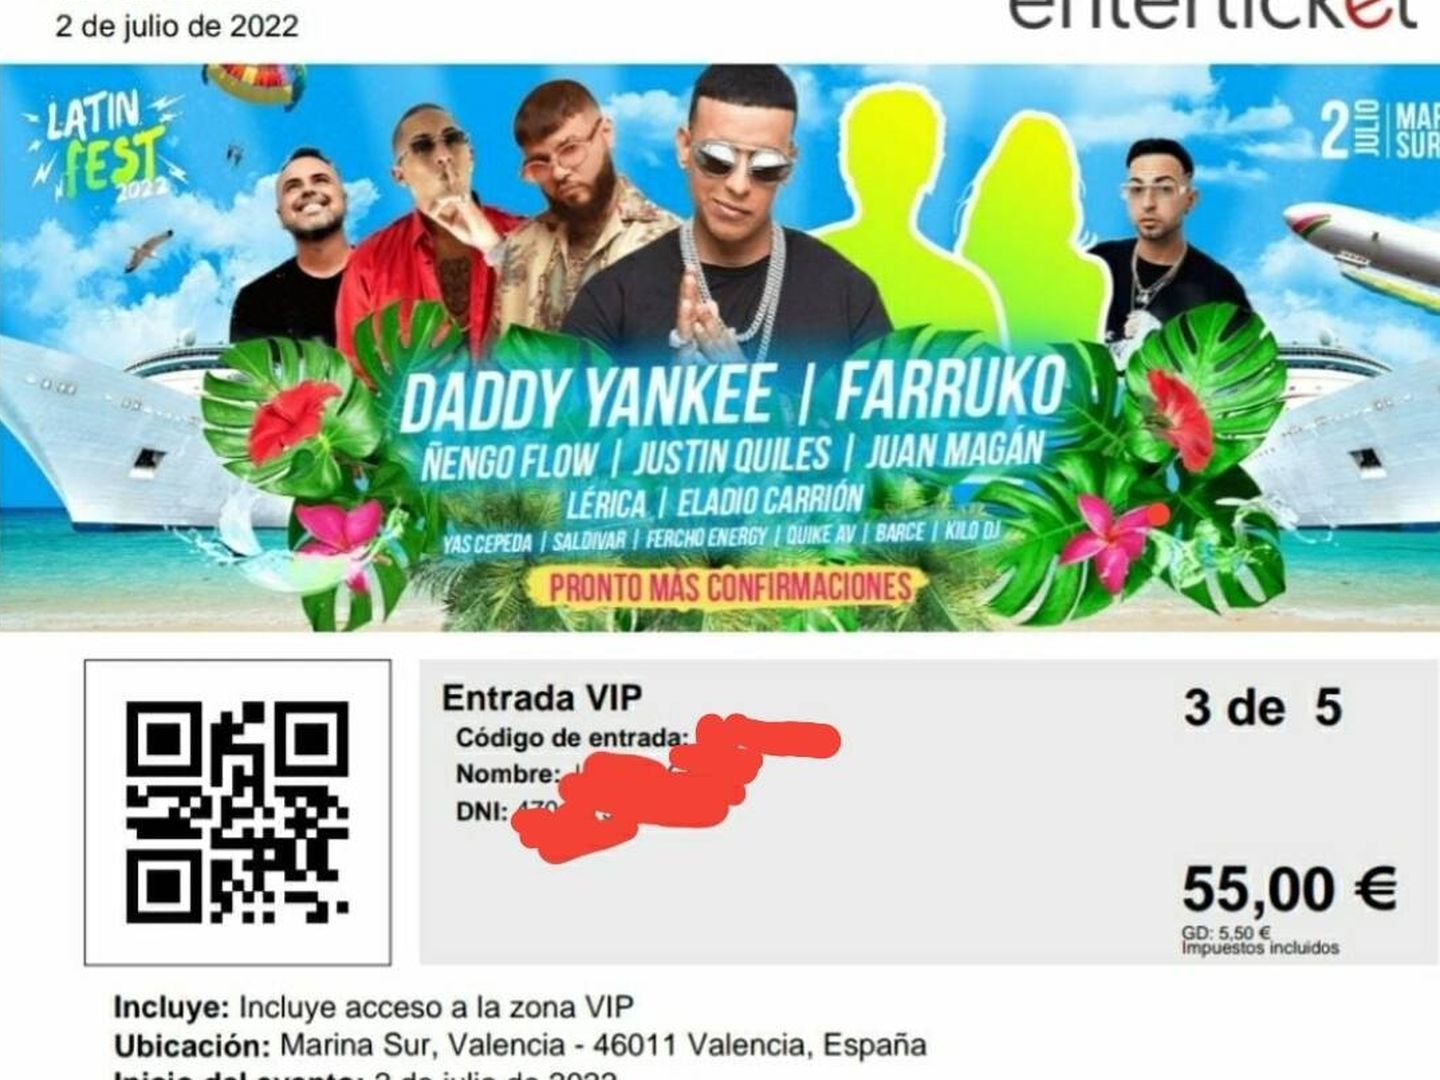 Una de las entradas del Latin Fest de Valencia, con la imagen de Daddy Yankee y Farruko, ninguno confirmado.